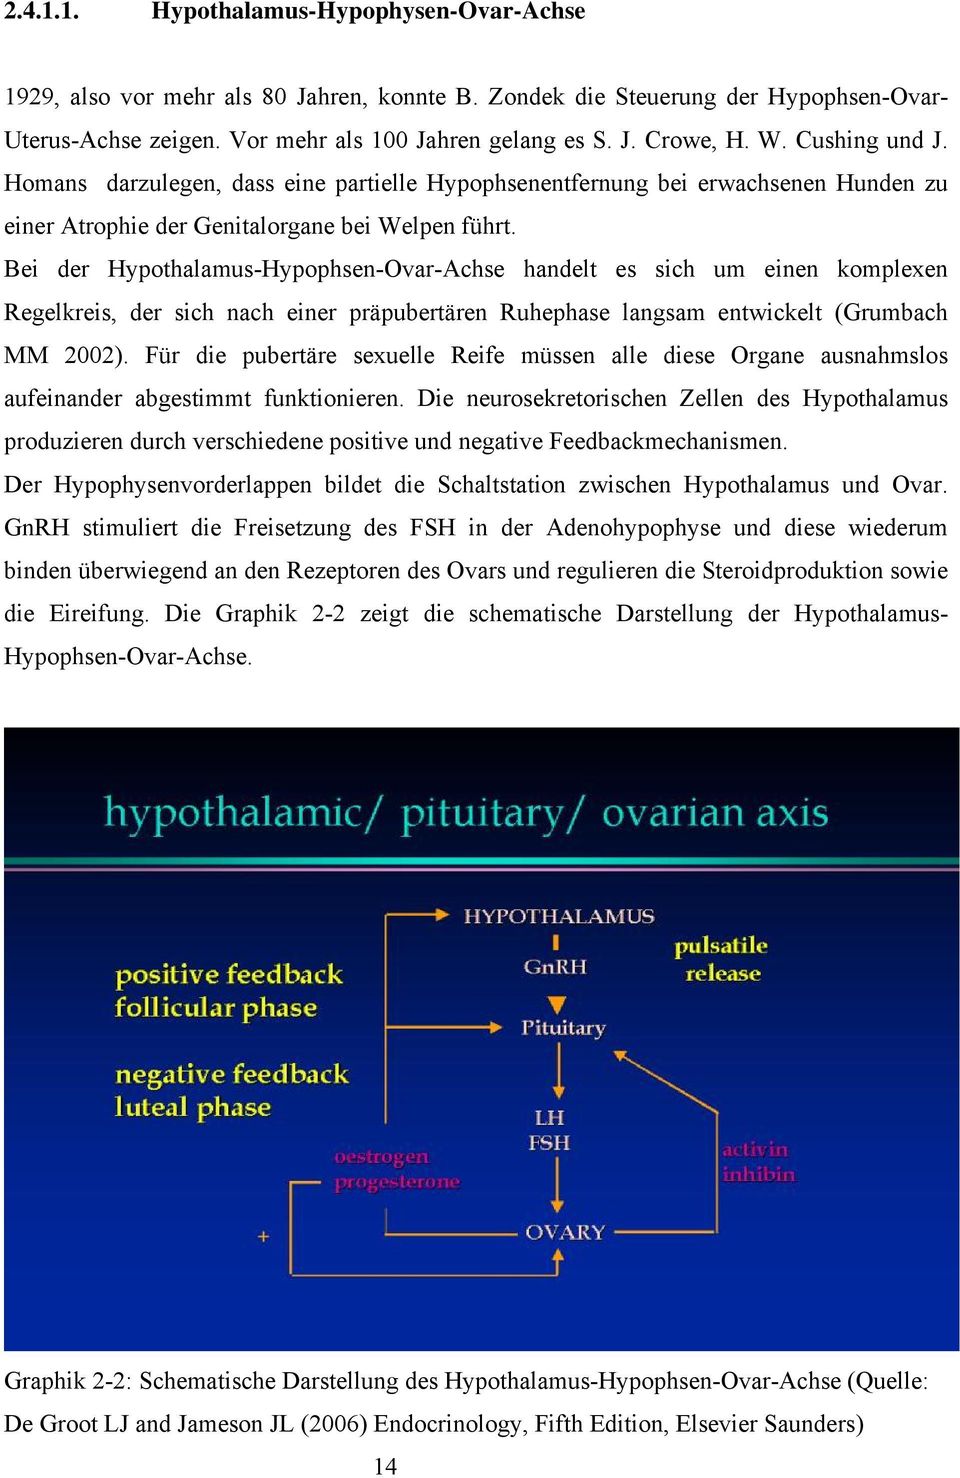 Bei der Hypothalamus-Hypophsen-Ovar-Achse handelt es sich um einen komplexen Regelkreis, der sich nach einer präpubertären Ruhephase langsam entwickelt (Grumbach MM 2002).